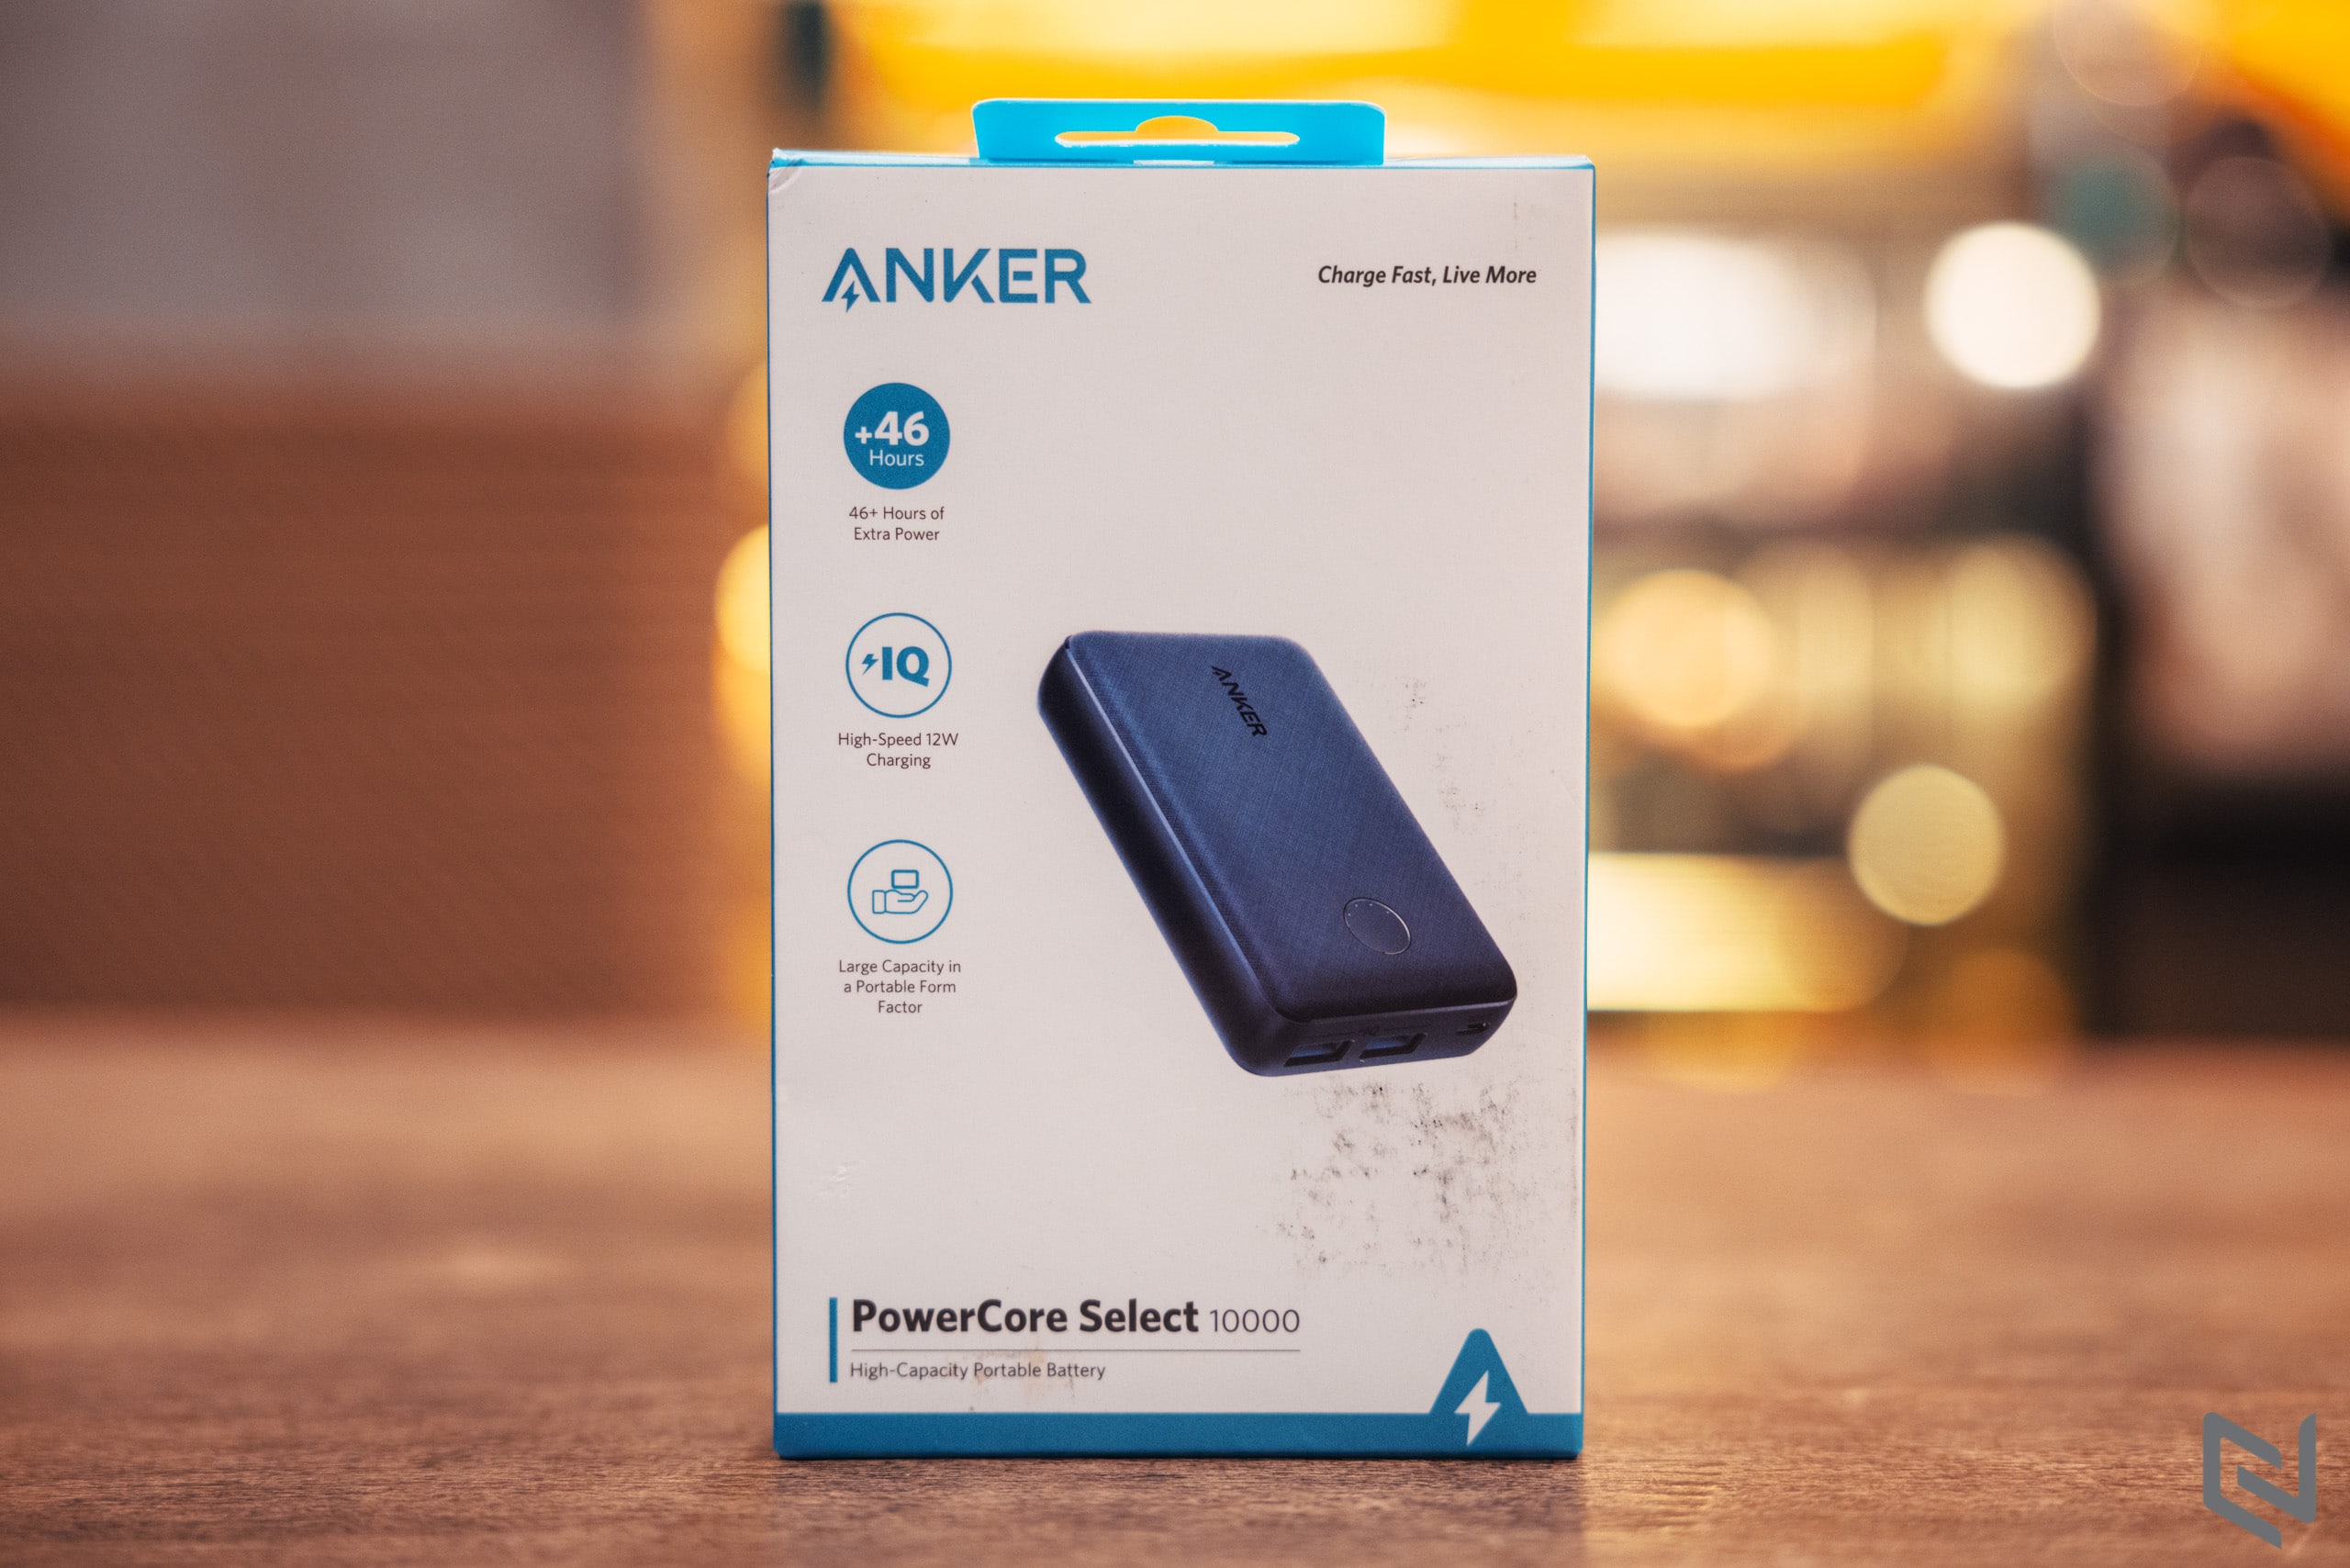 Sở hữu pin sạc dự phòng Anker PowerCore Select 10000 màu xanh độc quyền Shopee với mức giá chỉ 399,000 VND